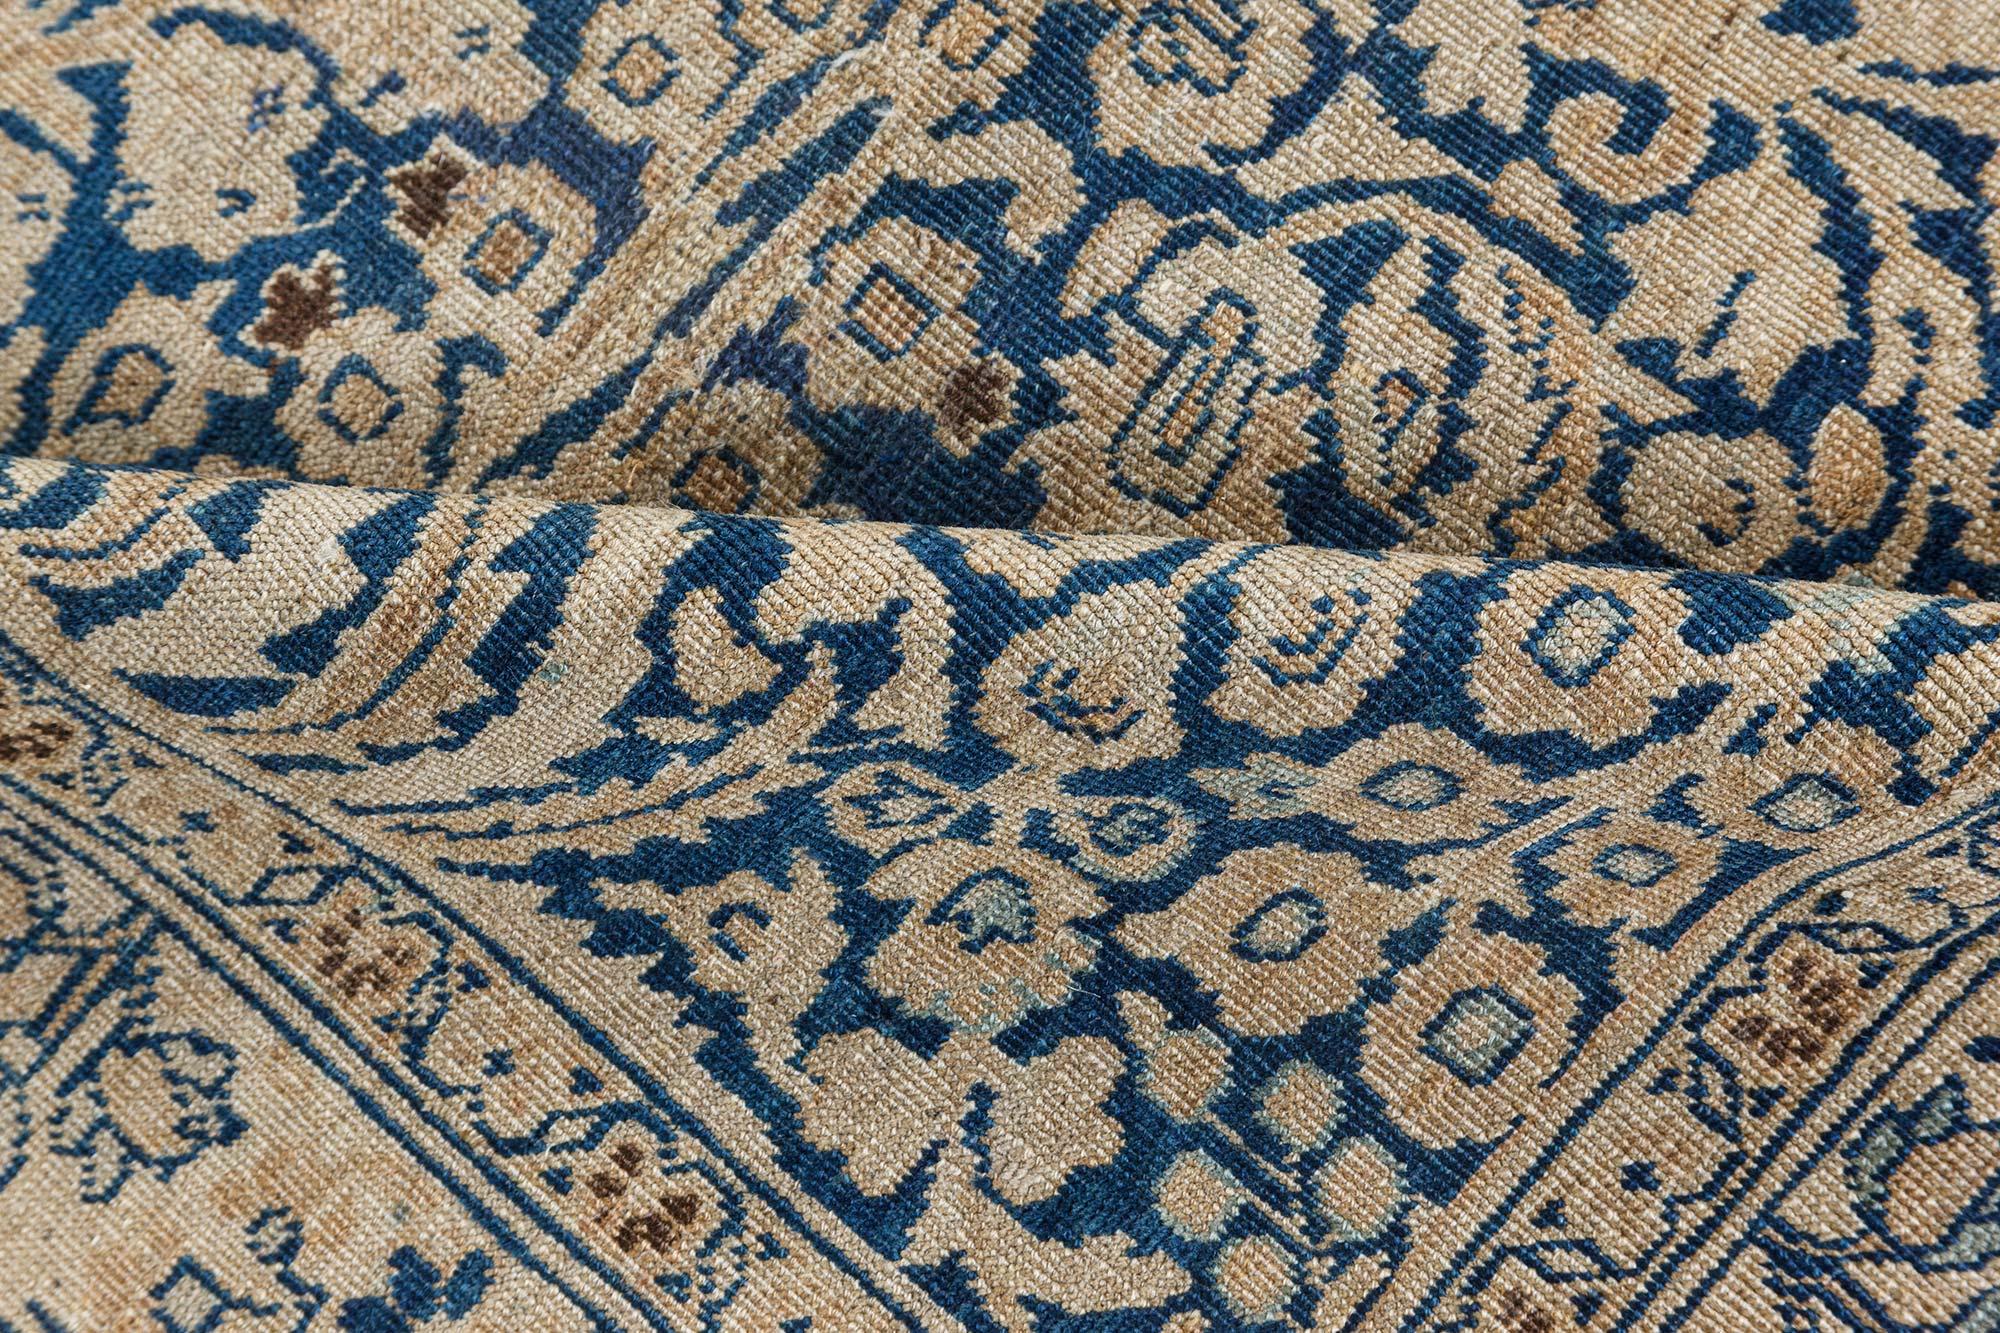 Authentique tapis persan en laine Khorassan du 19e siècle fait à la main
Taille : 13'8